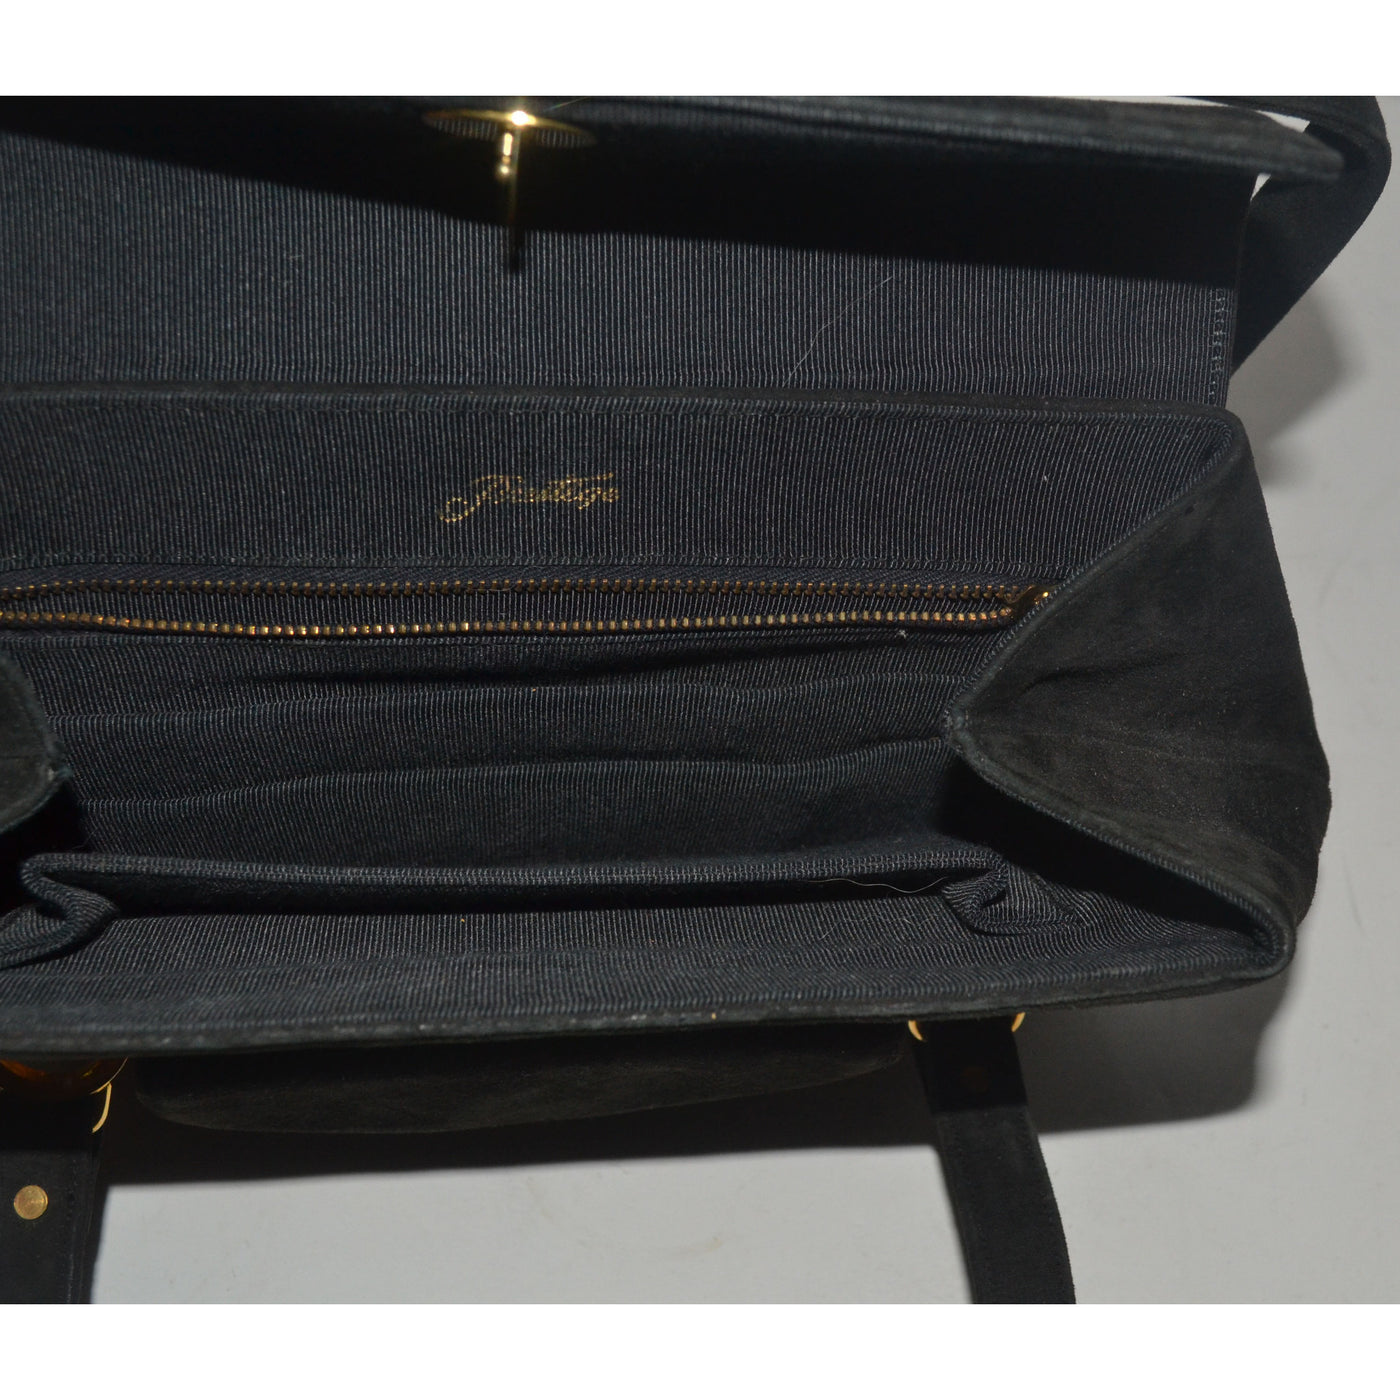 Vintage Black Suede Handbag By Prestige 